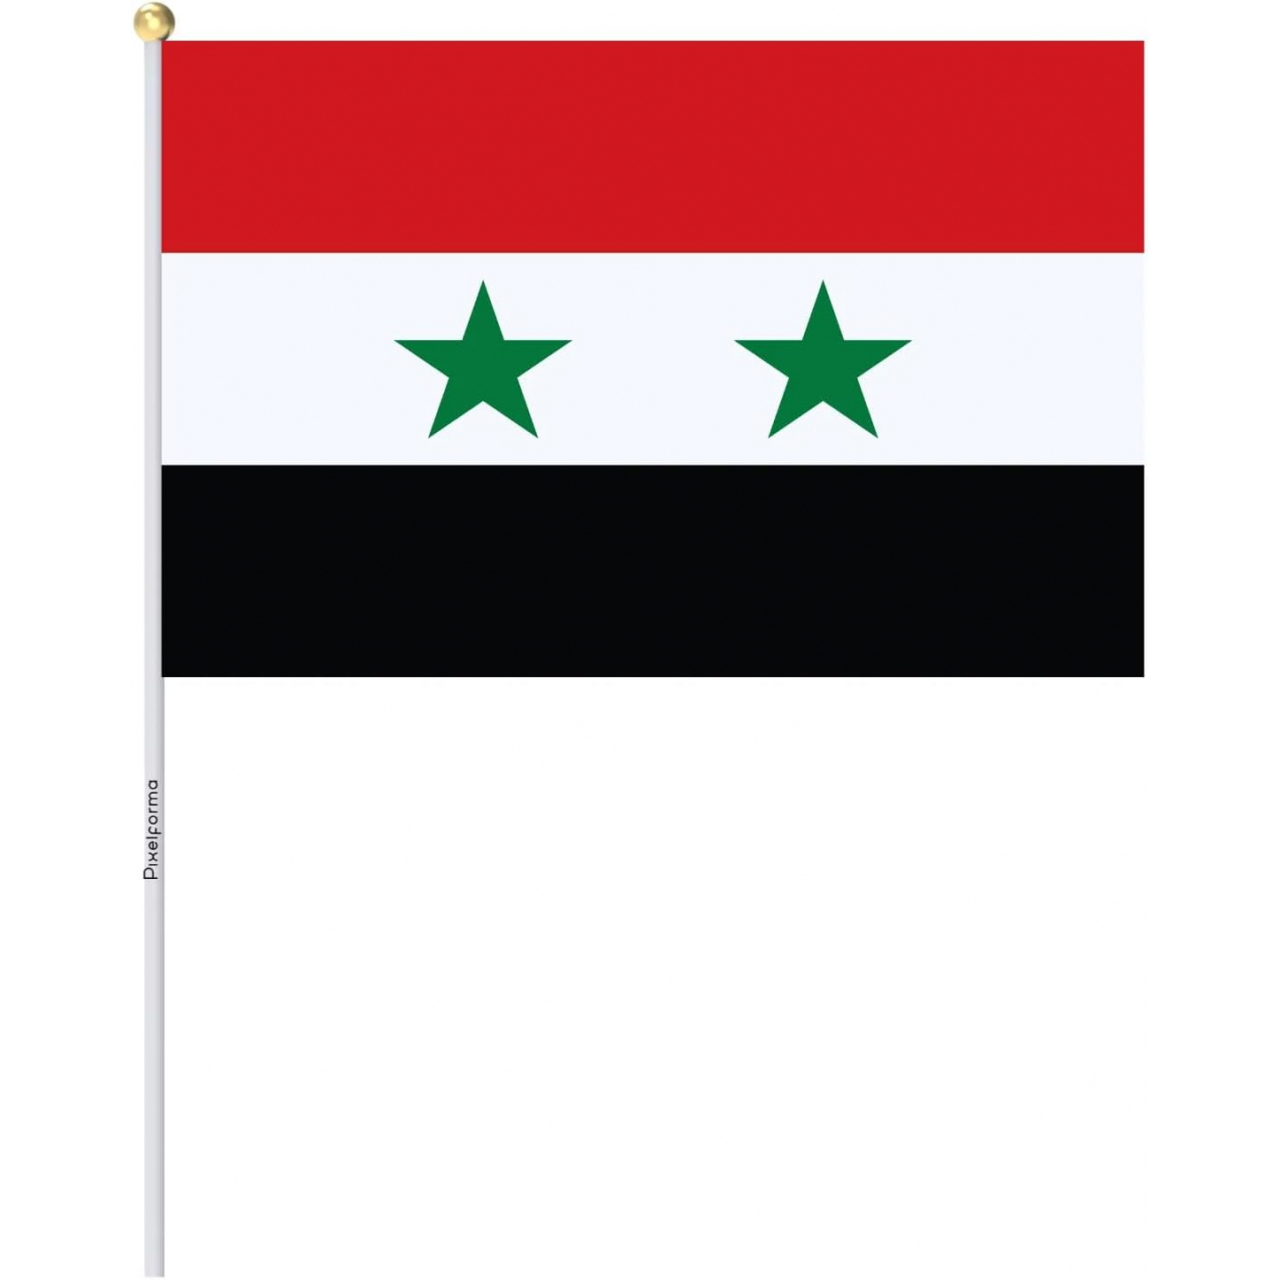 Praporek na tyčce vlajka Sýrie 14 x 21 - barevný